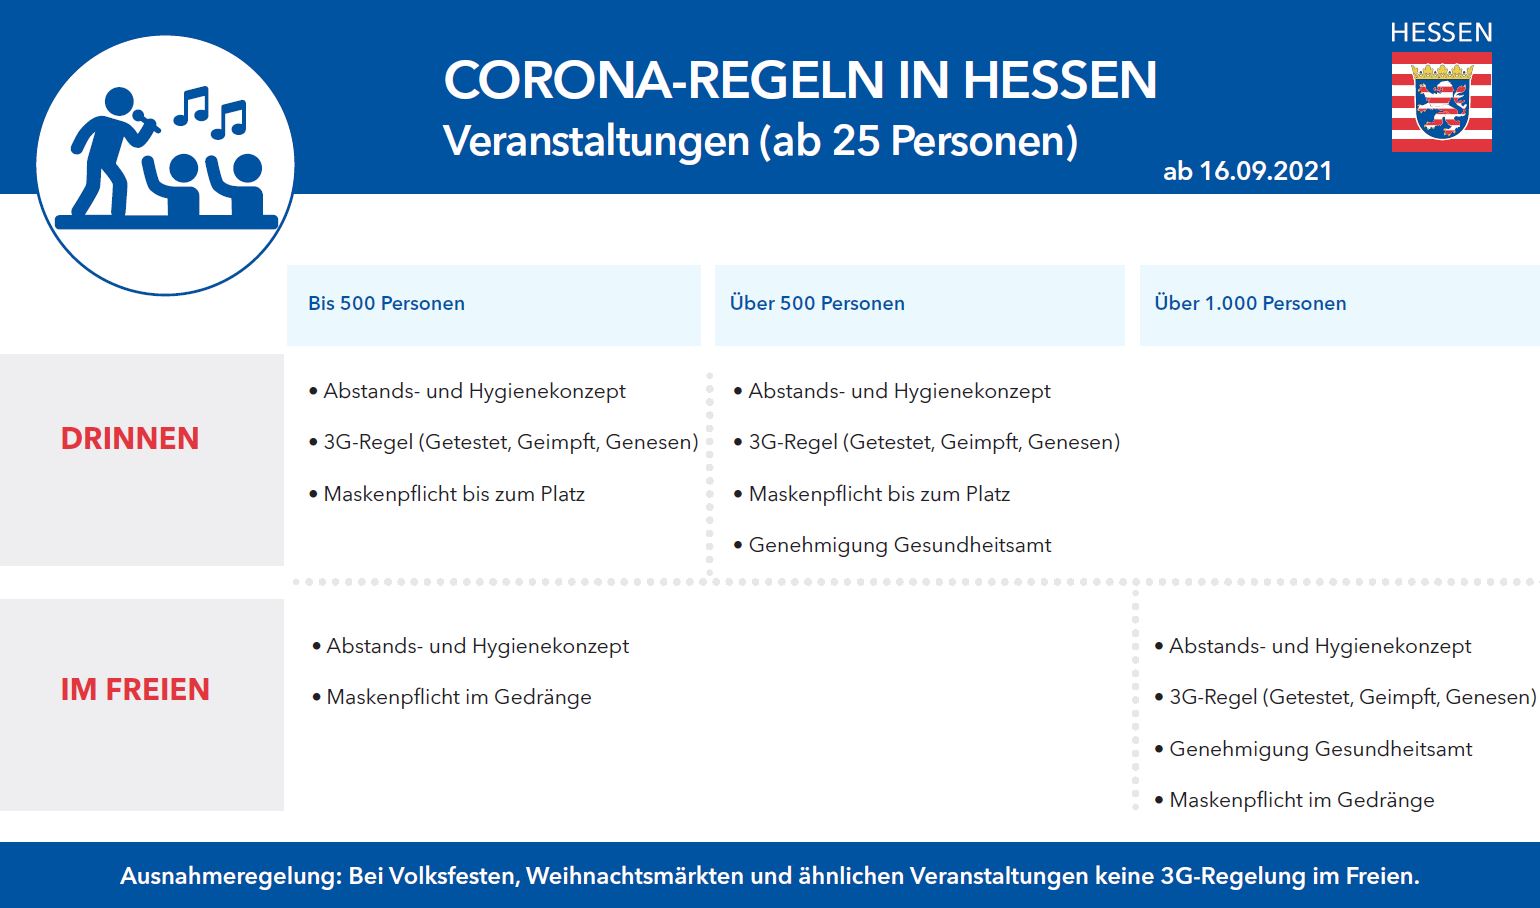 Corona-Regeln in Hessen ab 16.09.2021 - Was gilt wo? 